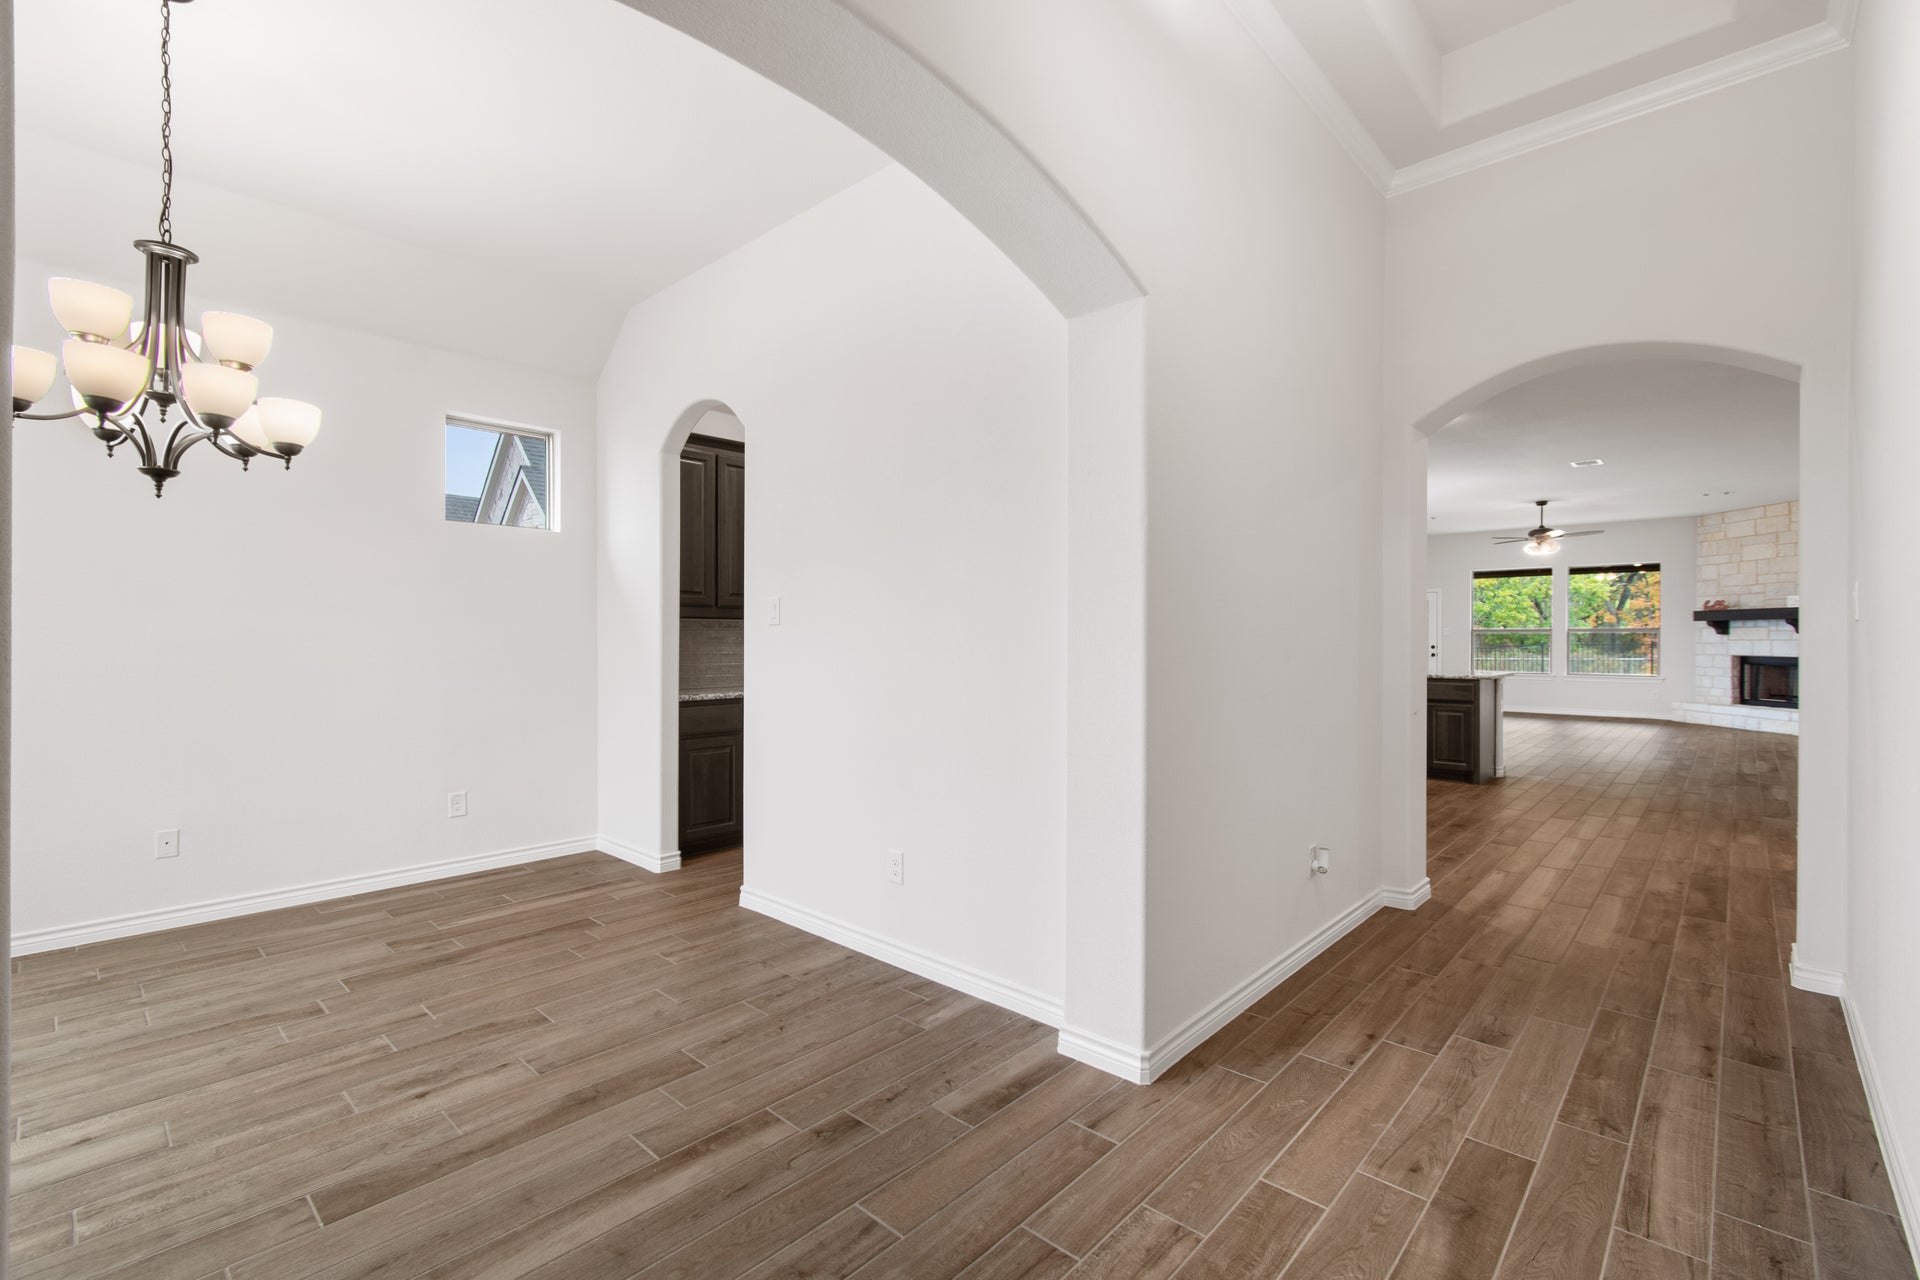 Concept 2533 New Home Floor Plan